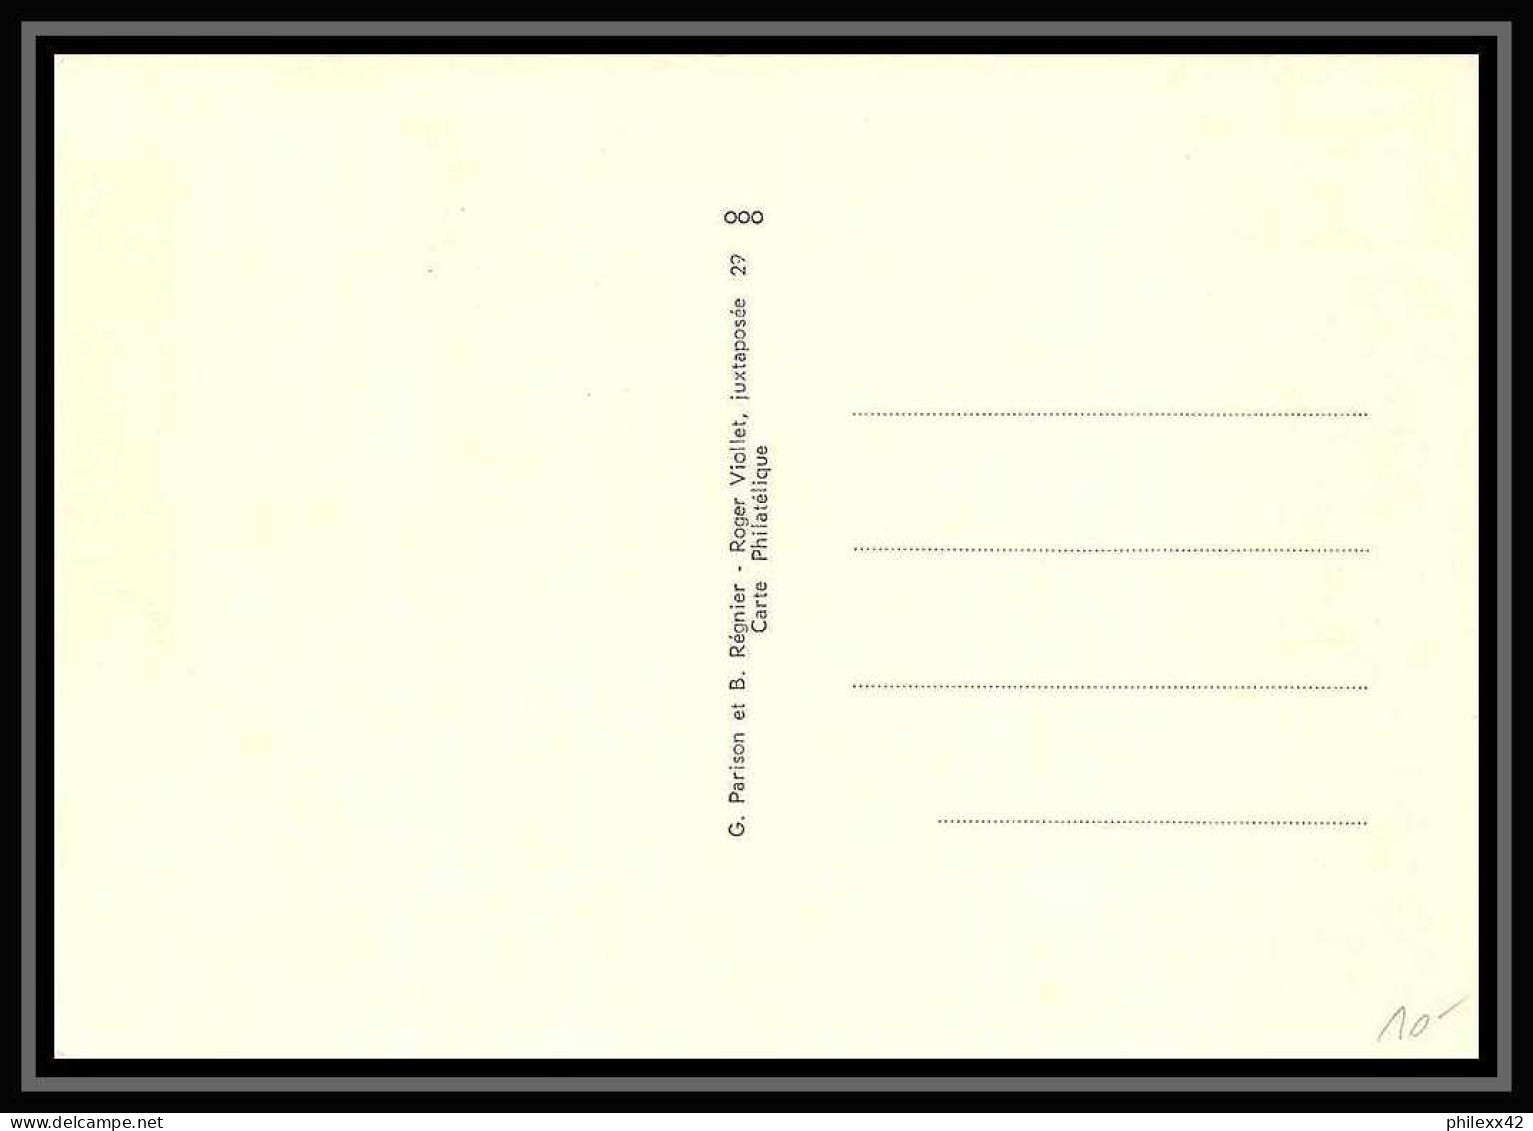 2360/ Carte Maximum France N°1600 Organisation Internationale Du Travail OIT ALBERT THOMAS Edition Parison 1969 - ILO